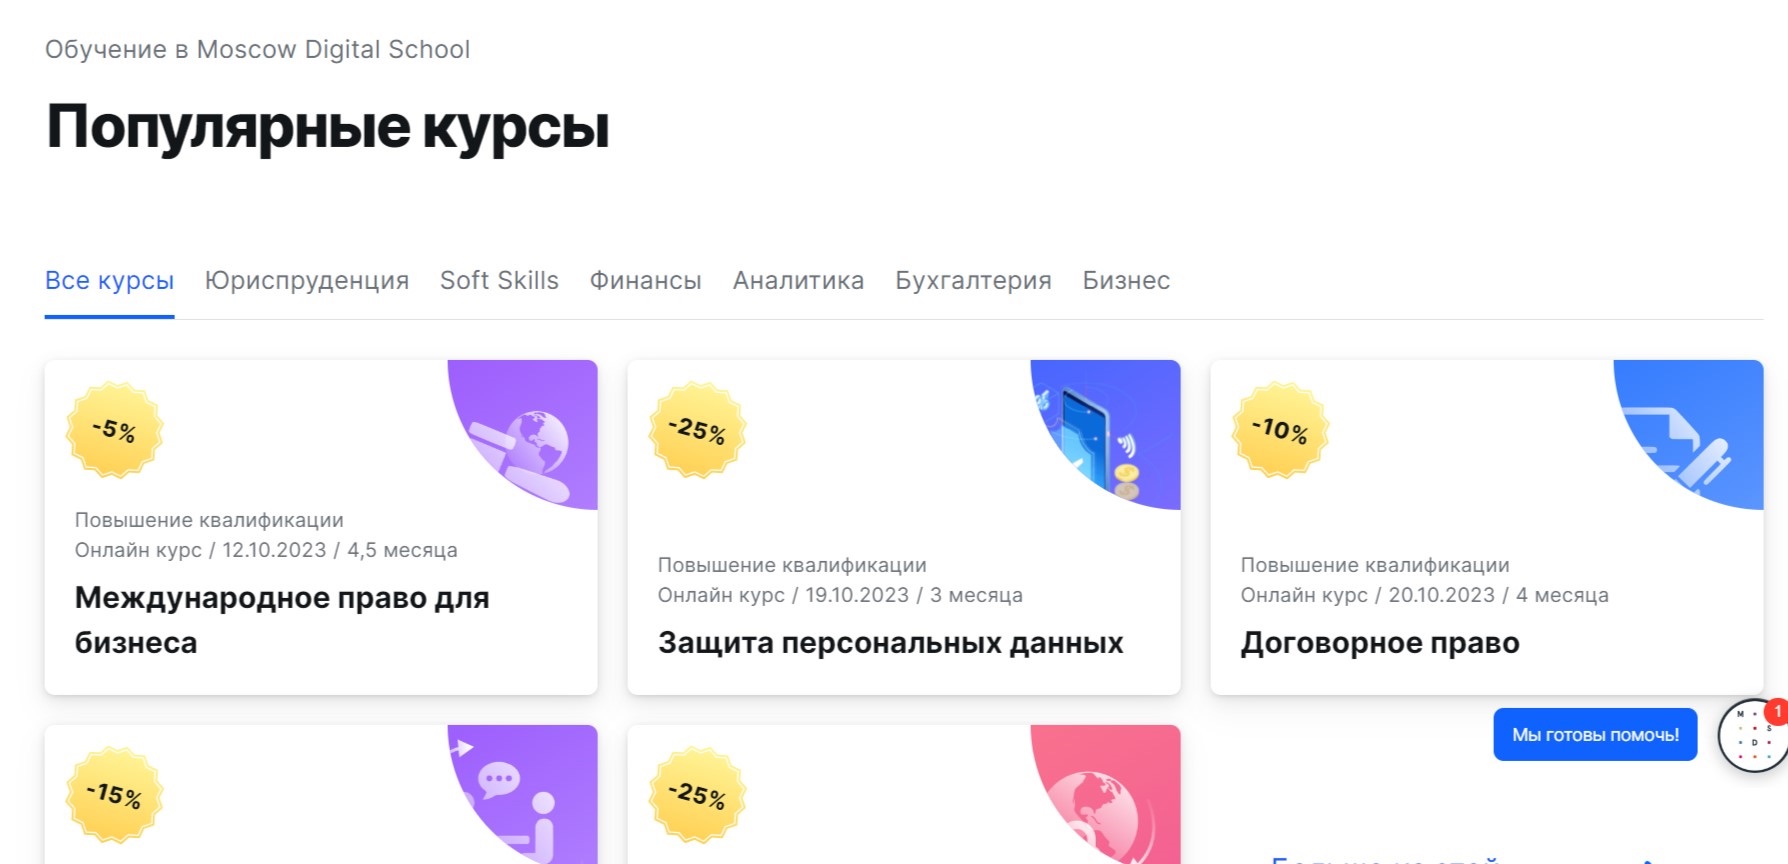 Популярные курсы Moscow digital school